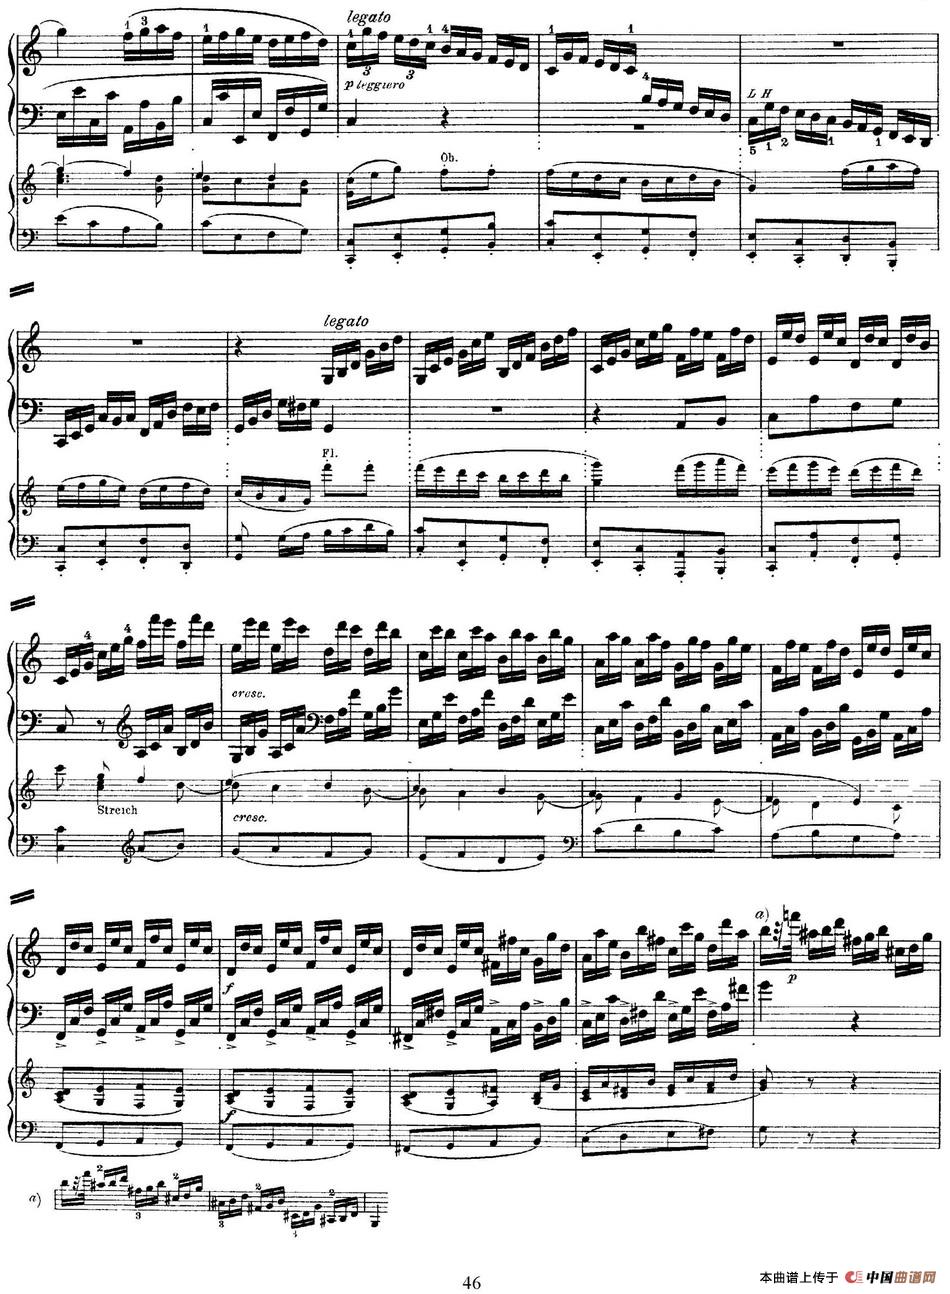 二十八部钢琴协奏曲 No.25（P46-50）